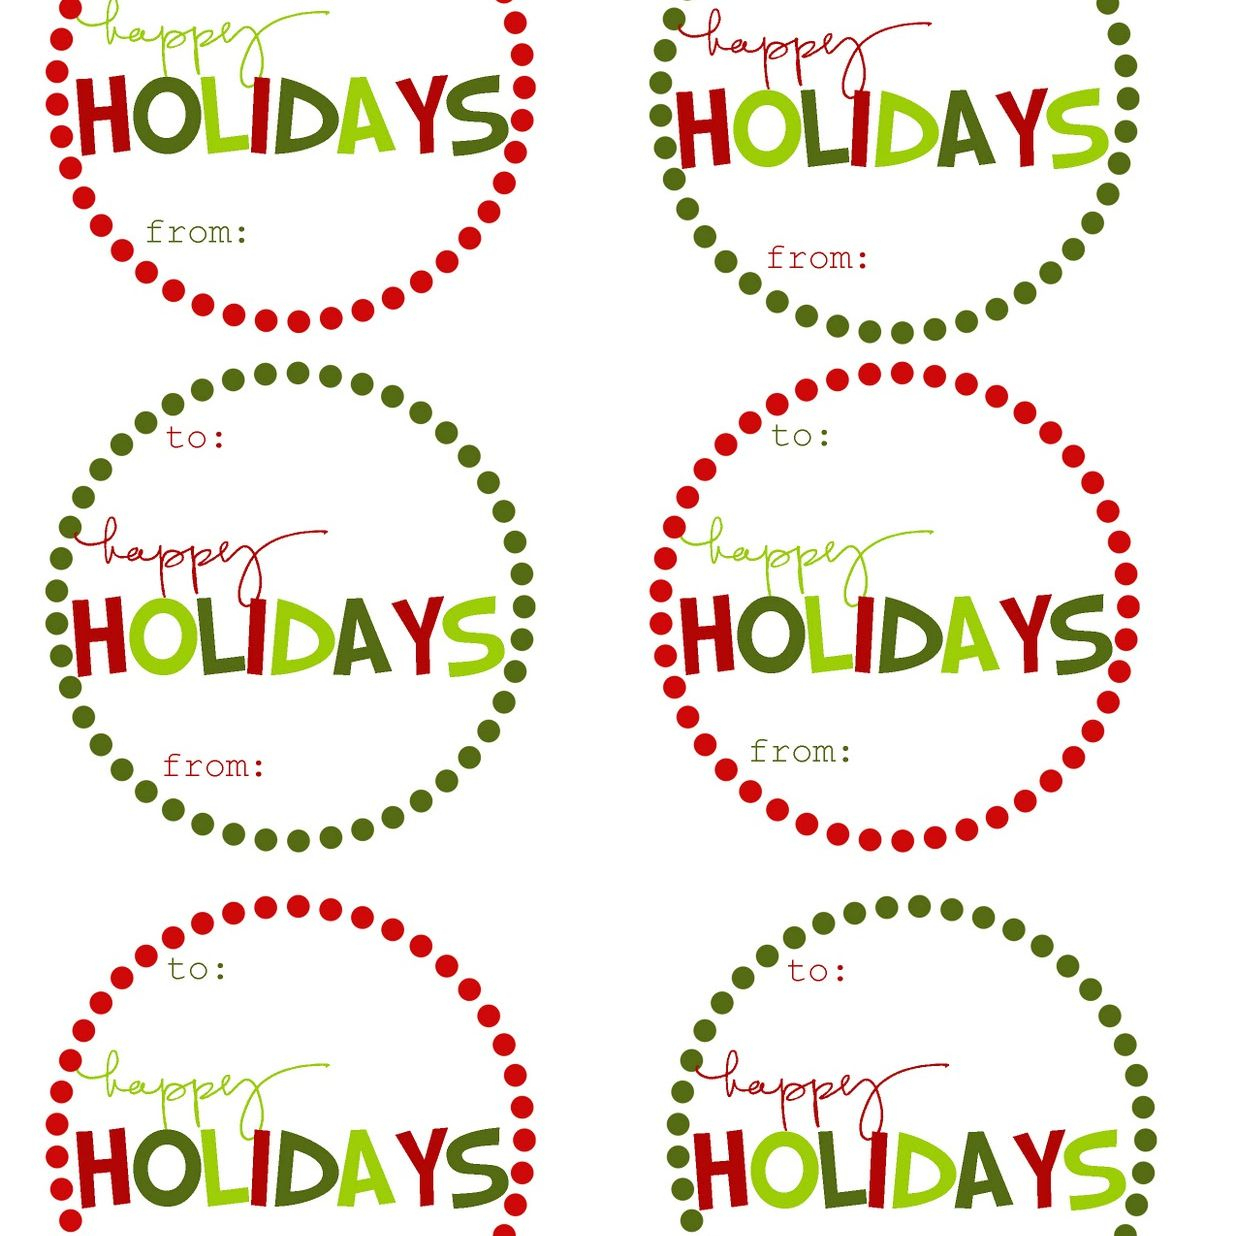 40 Sets Of Free Printable Christmas Gift Tags - Diy Christmas Gift Tags Free Printable